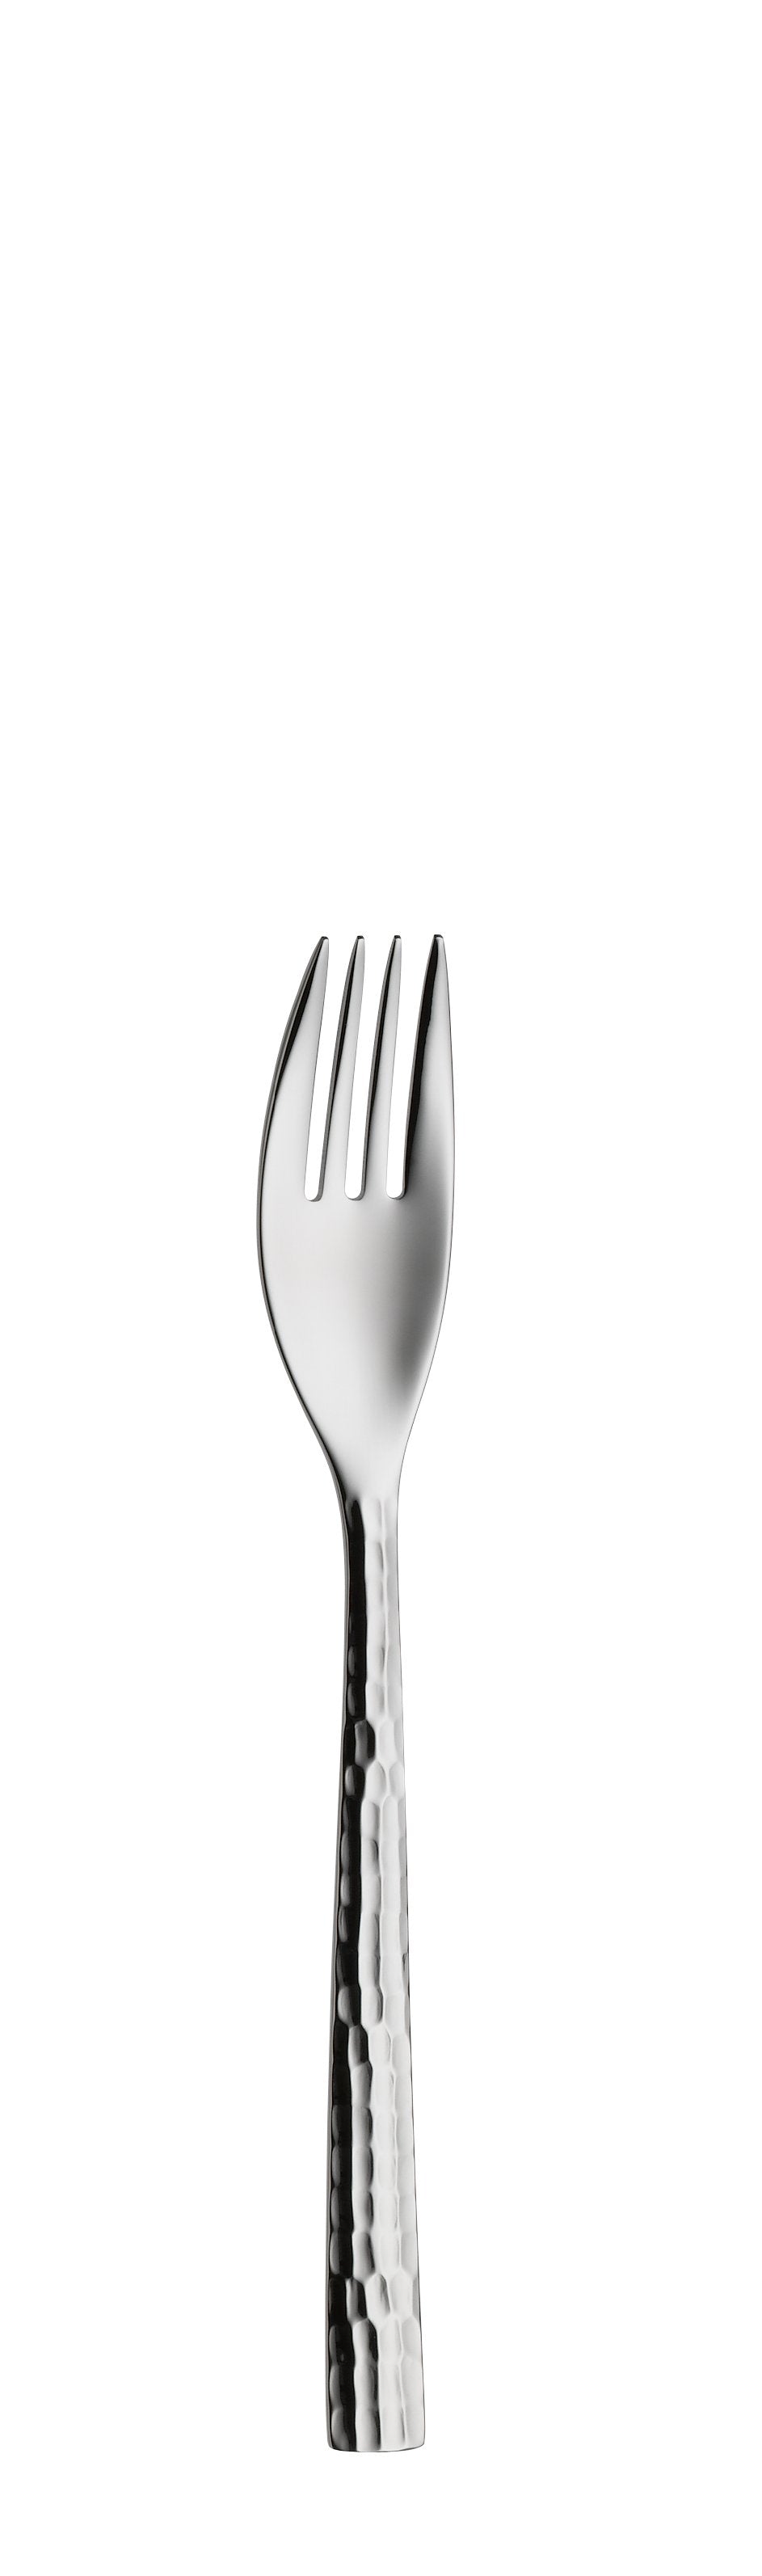 Dessert fork 4 prongs LENISTA 158mm